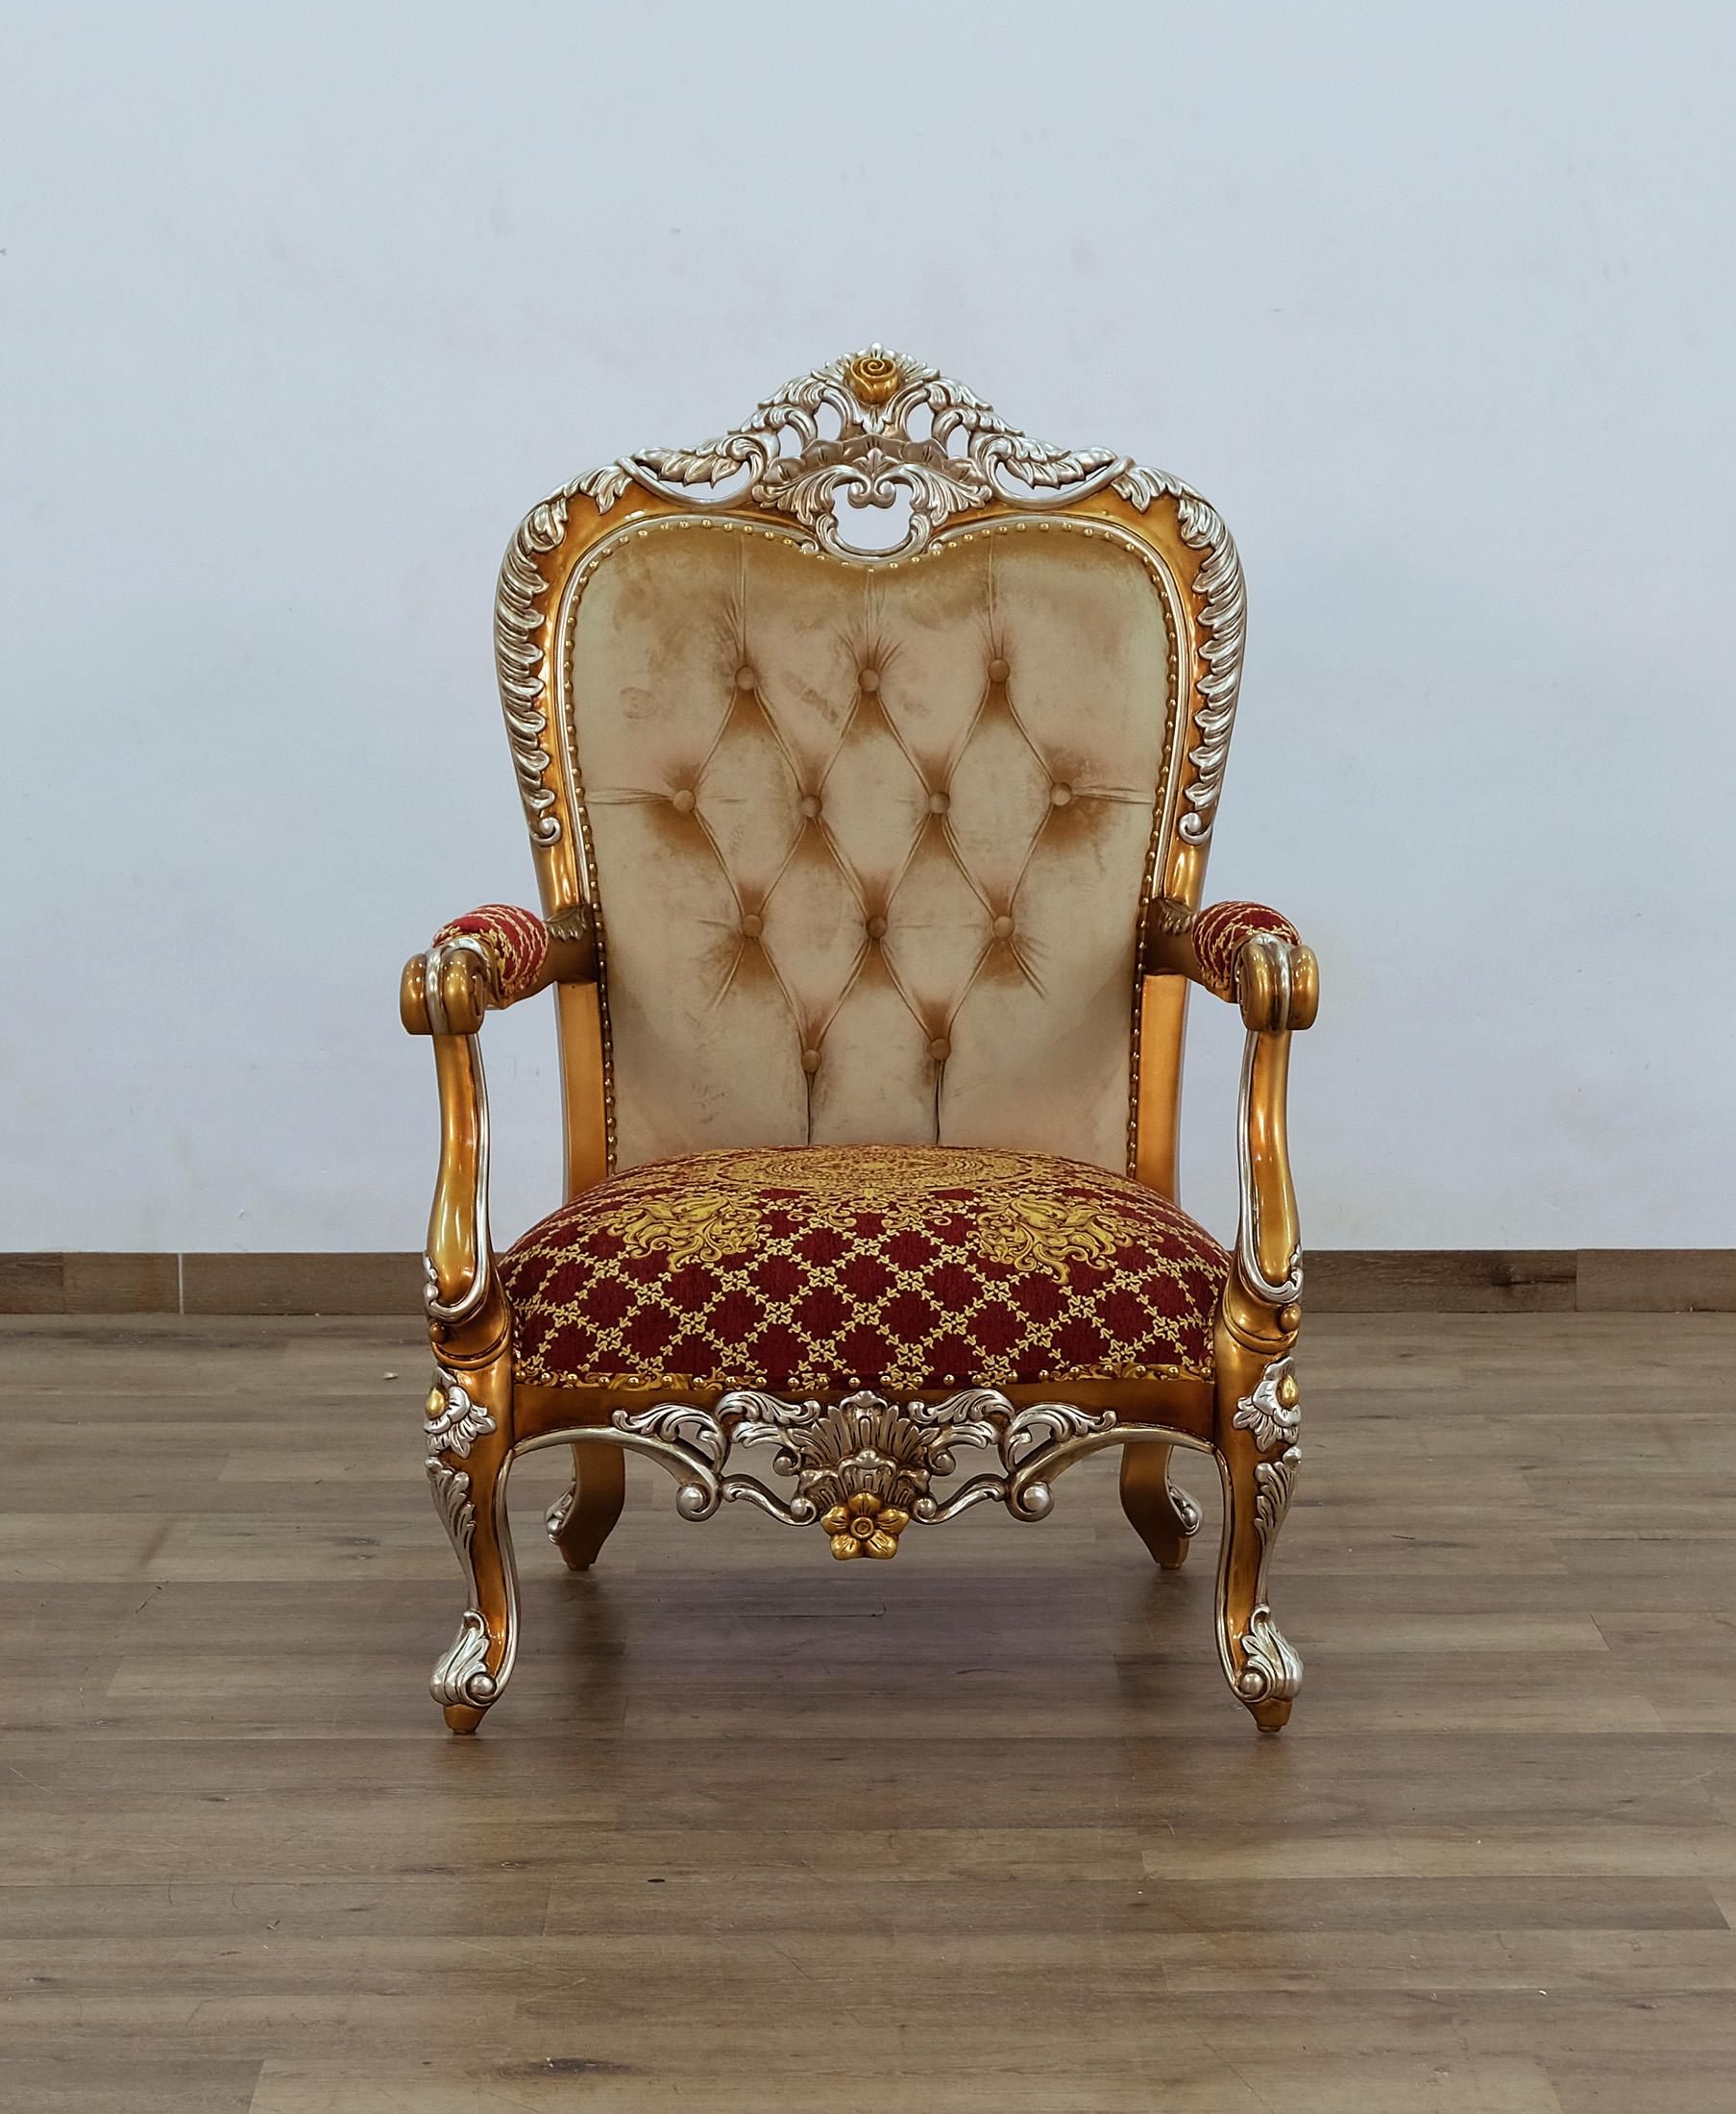 

        
EUROPEAN FURNITURE SAINT GERMAIN Arm Chair Set Sand/Red/Gold Fabric 6015434523524
